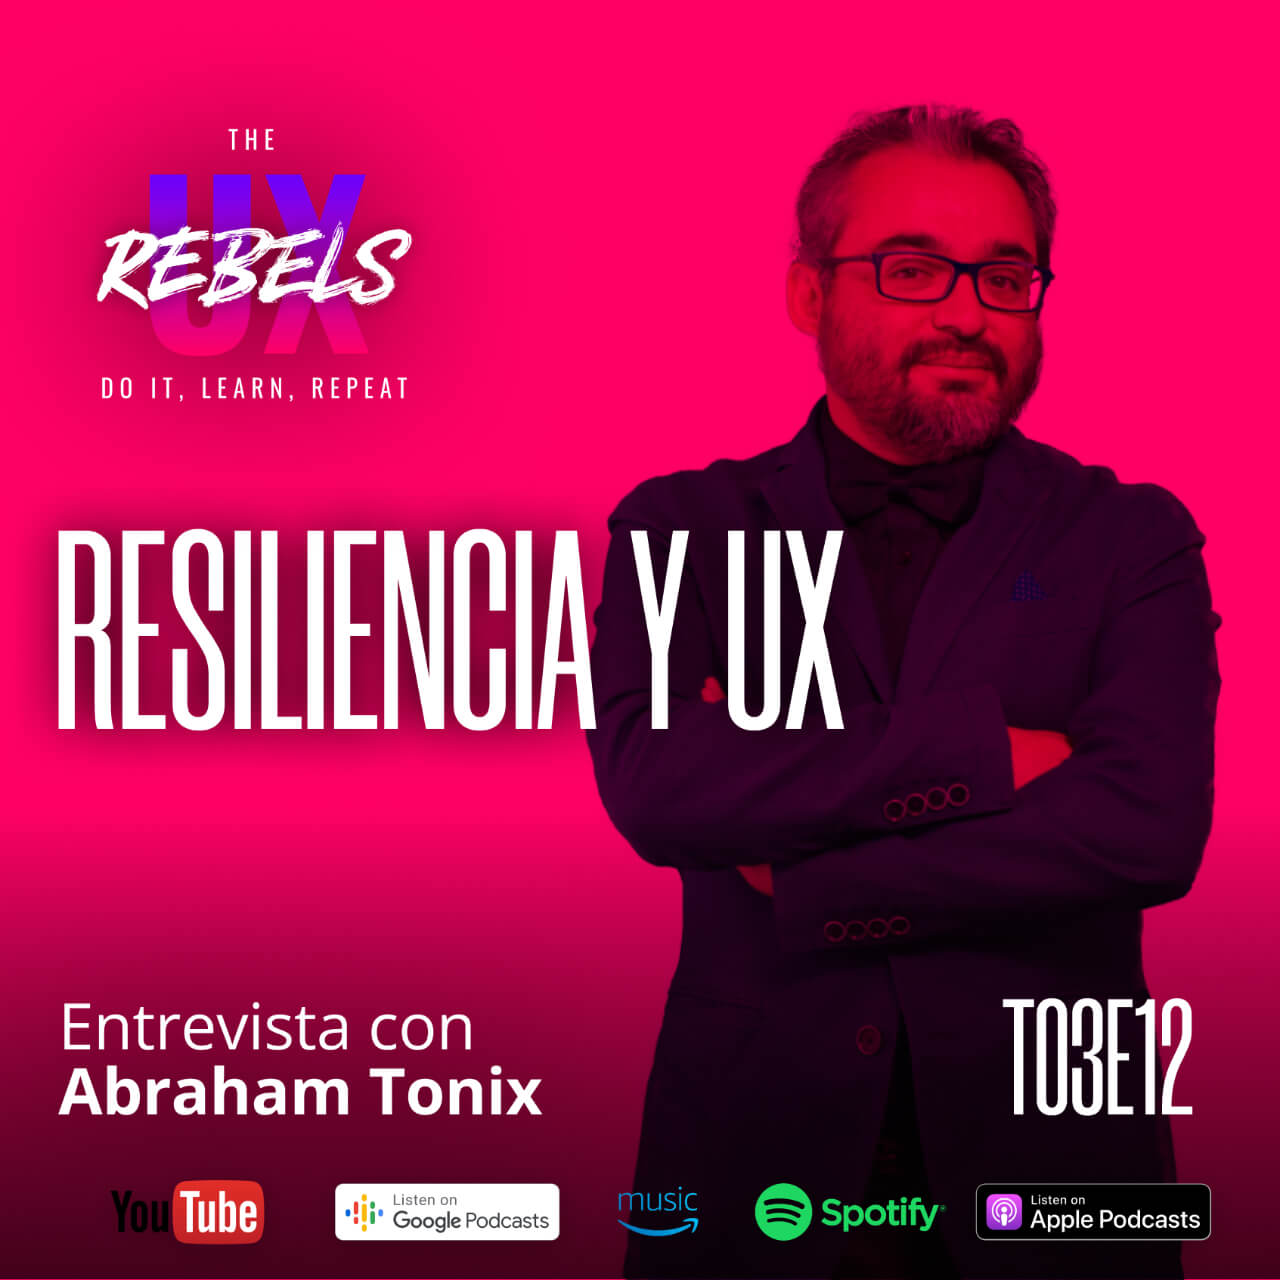 Escucha el episodio de Abraham Tonix sobre resiliencia en UX